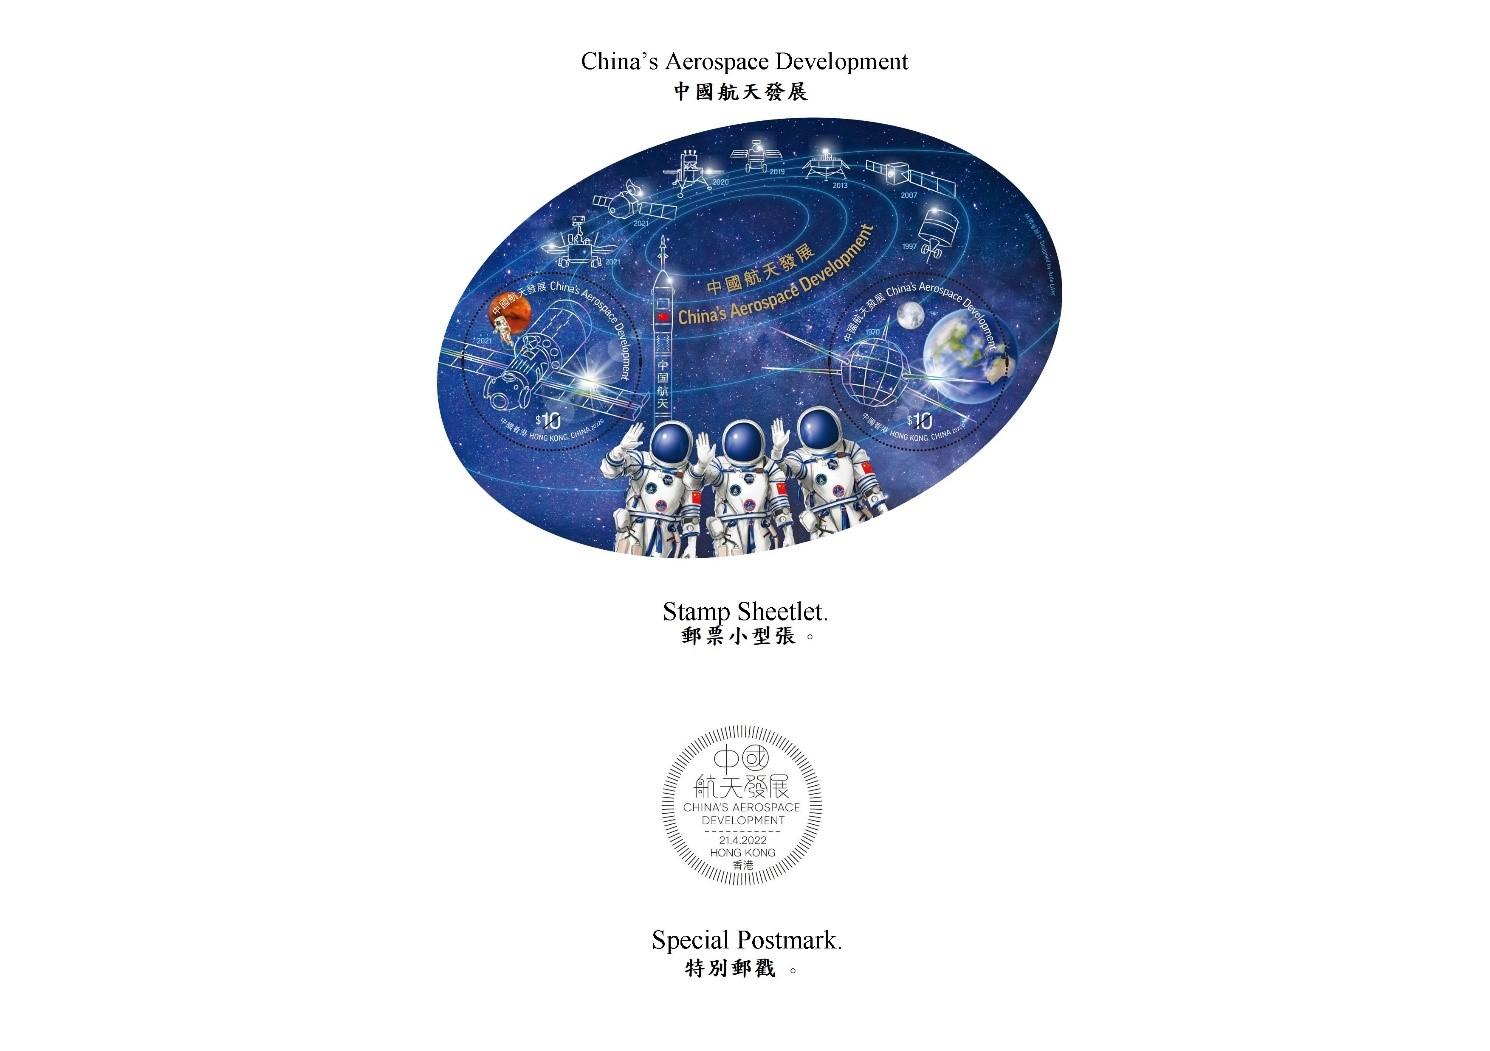 香港邮政四月二十一日（星期四）发行以「中国航天发展」为题的特别邮票及相关集邮品。图示邮票小型张和特别邮戳。